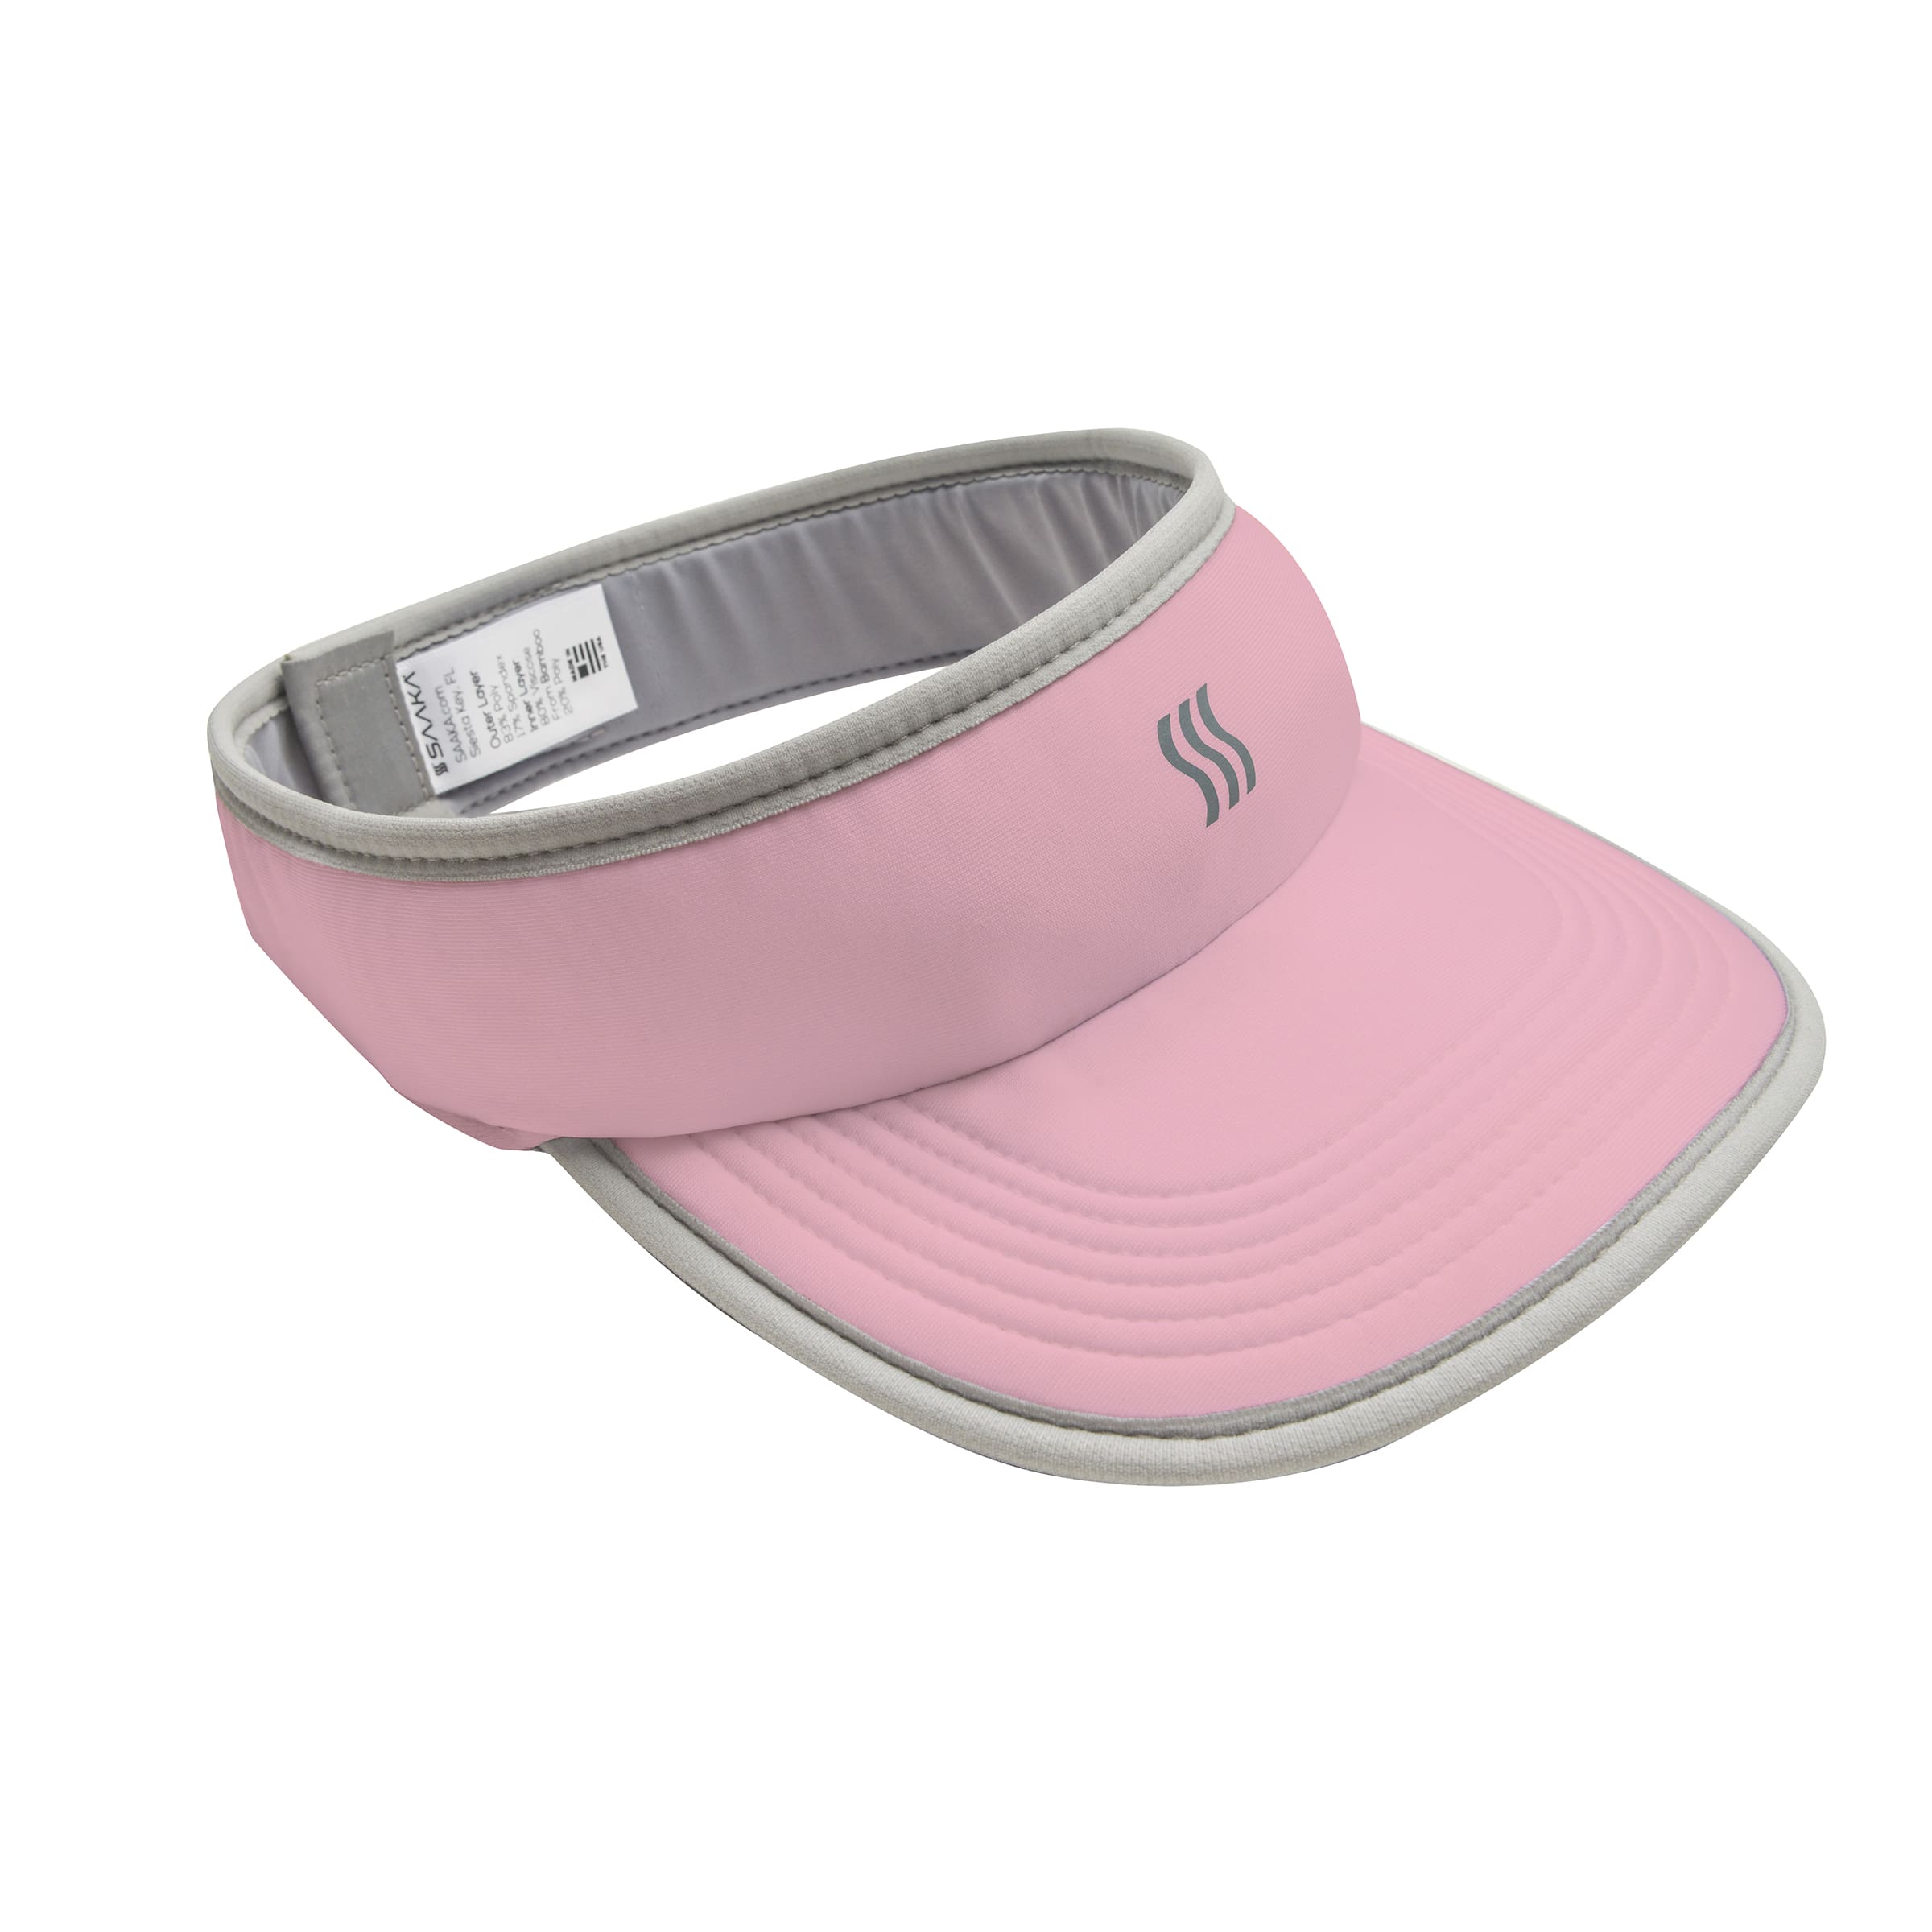 Pink visor hat for women